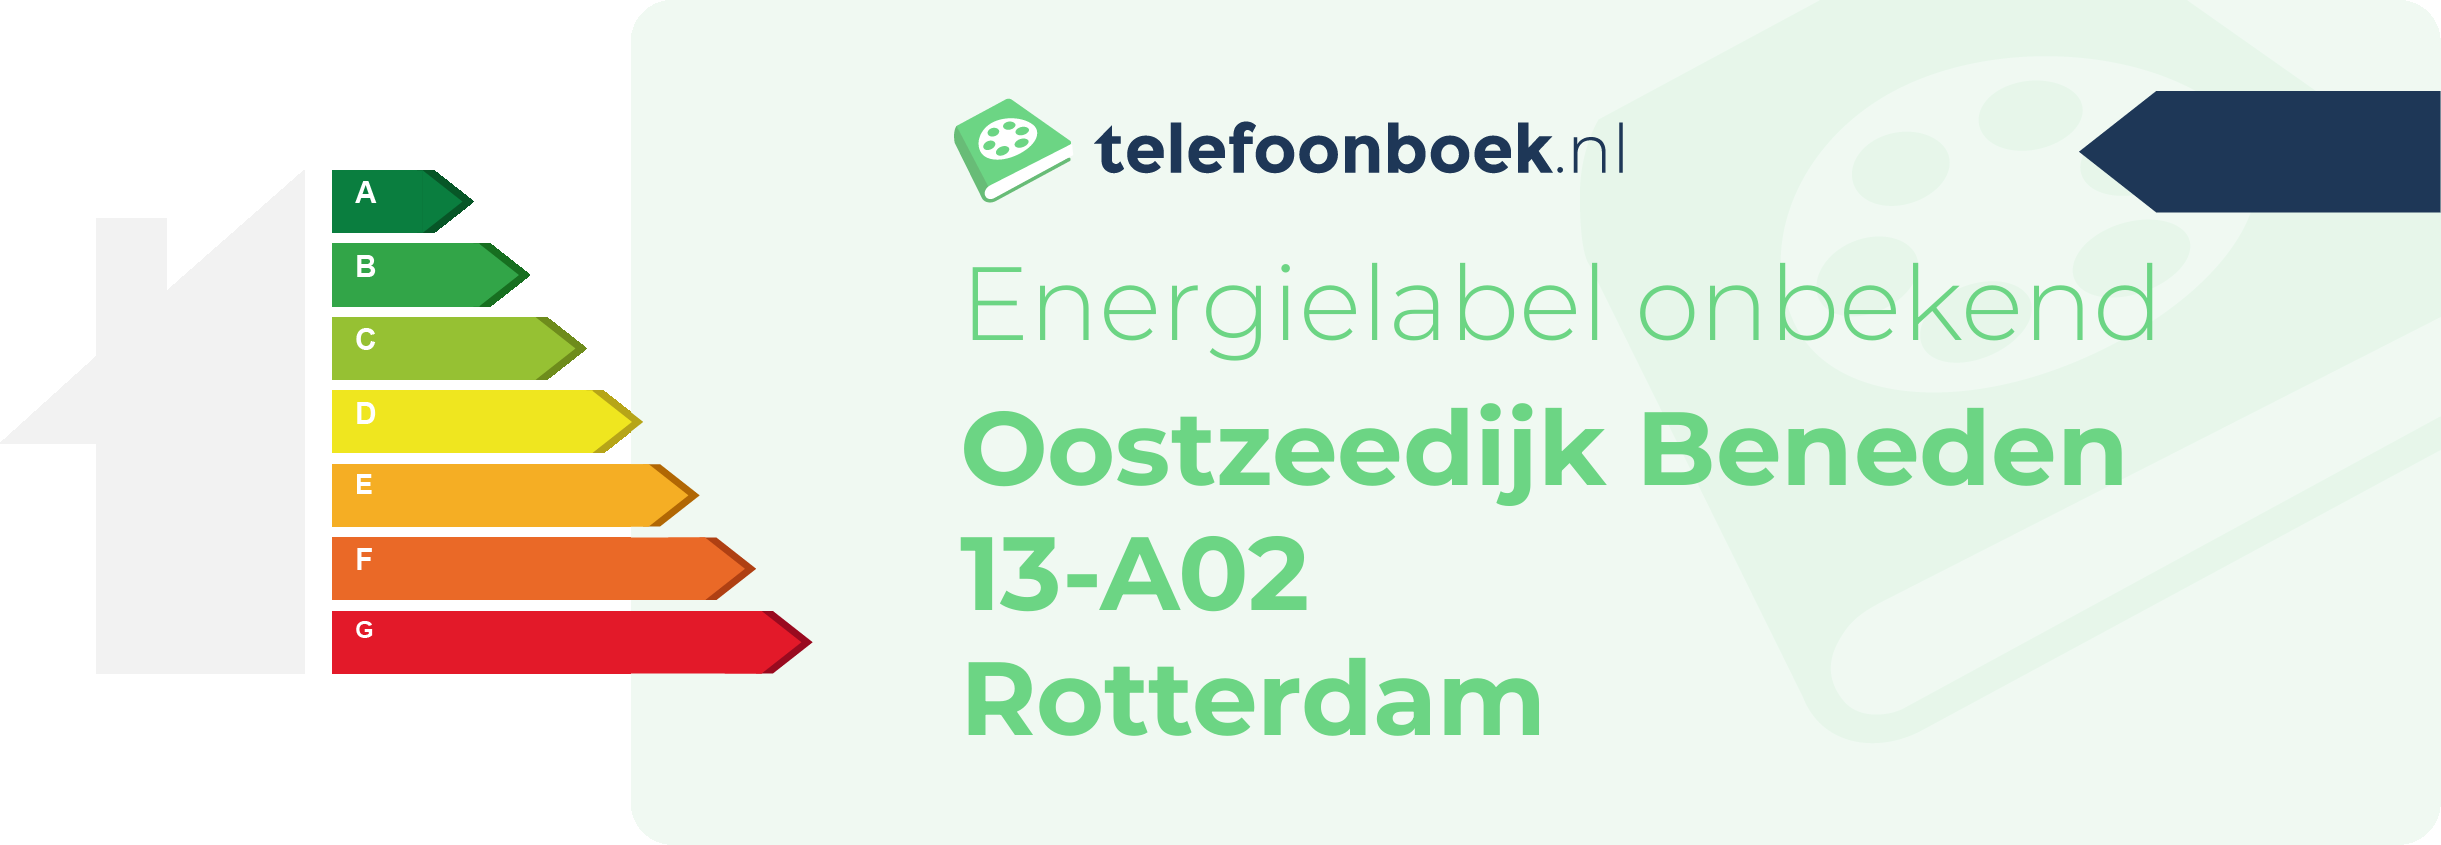 Energielabel Oostzeedijk Beneden 13-A02 Rotterdam